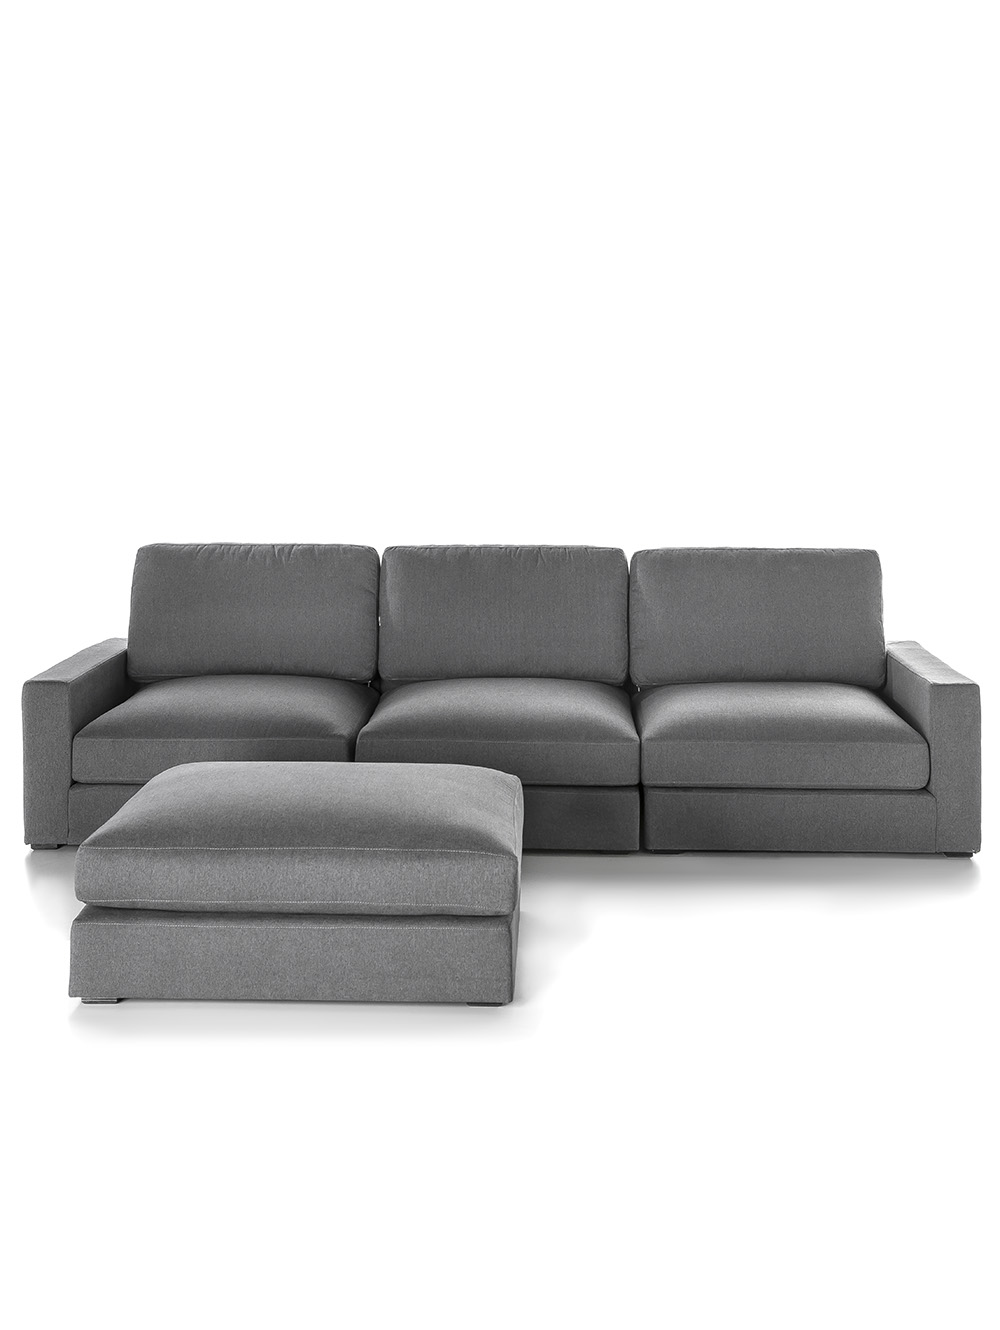 Sofa modular pana gris-SOFA BELMONT TAPIZADO PANA SHOT NICKEL-Landmark-0.jpg image number null